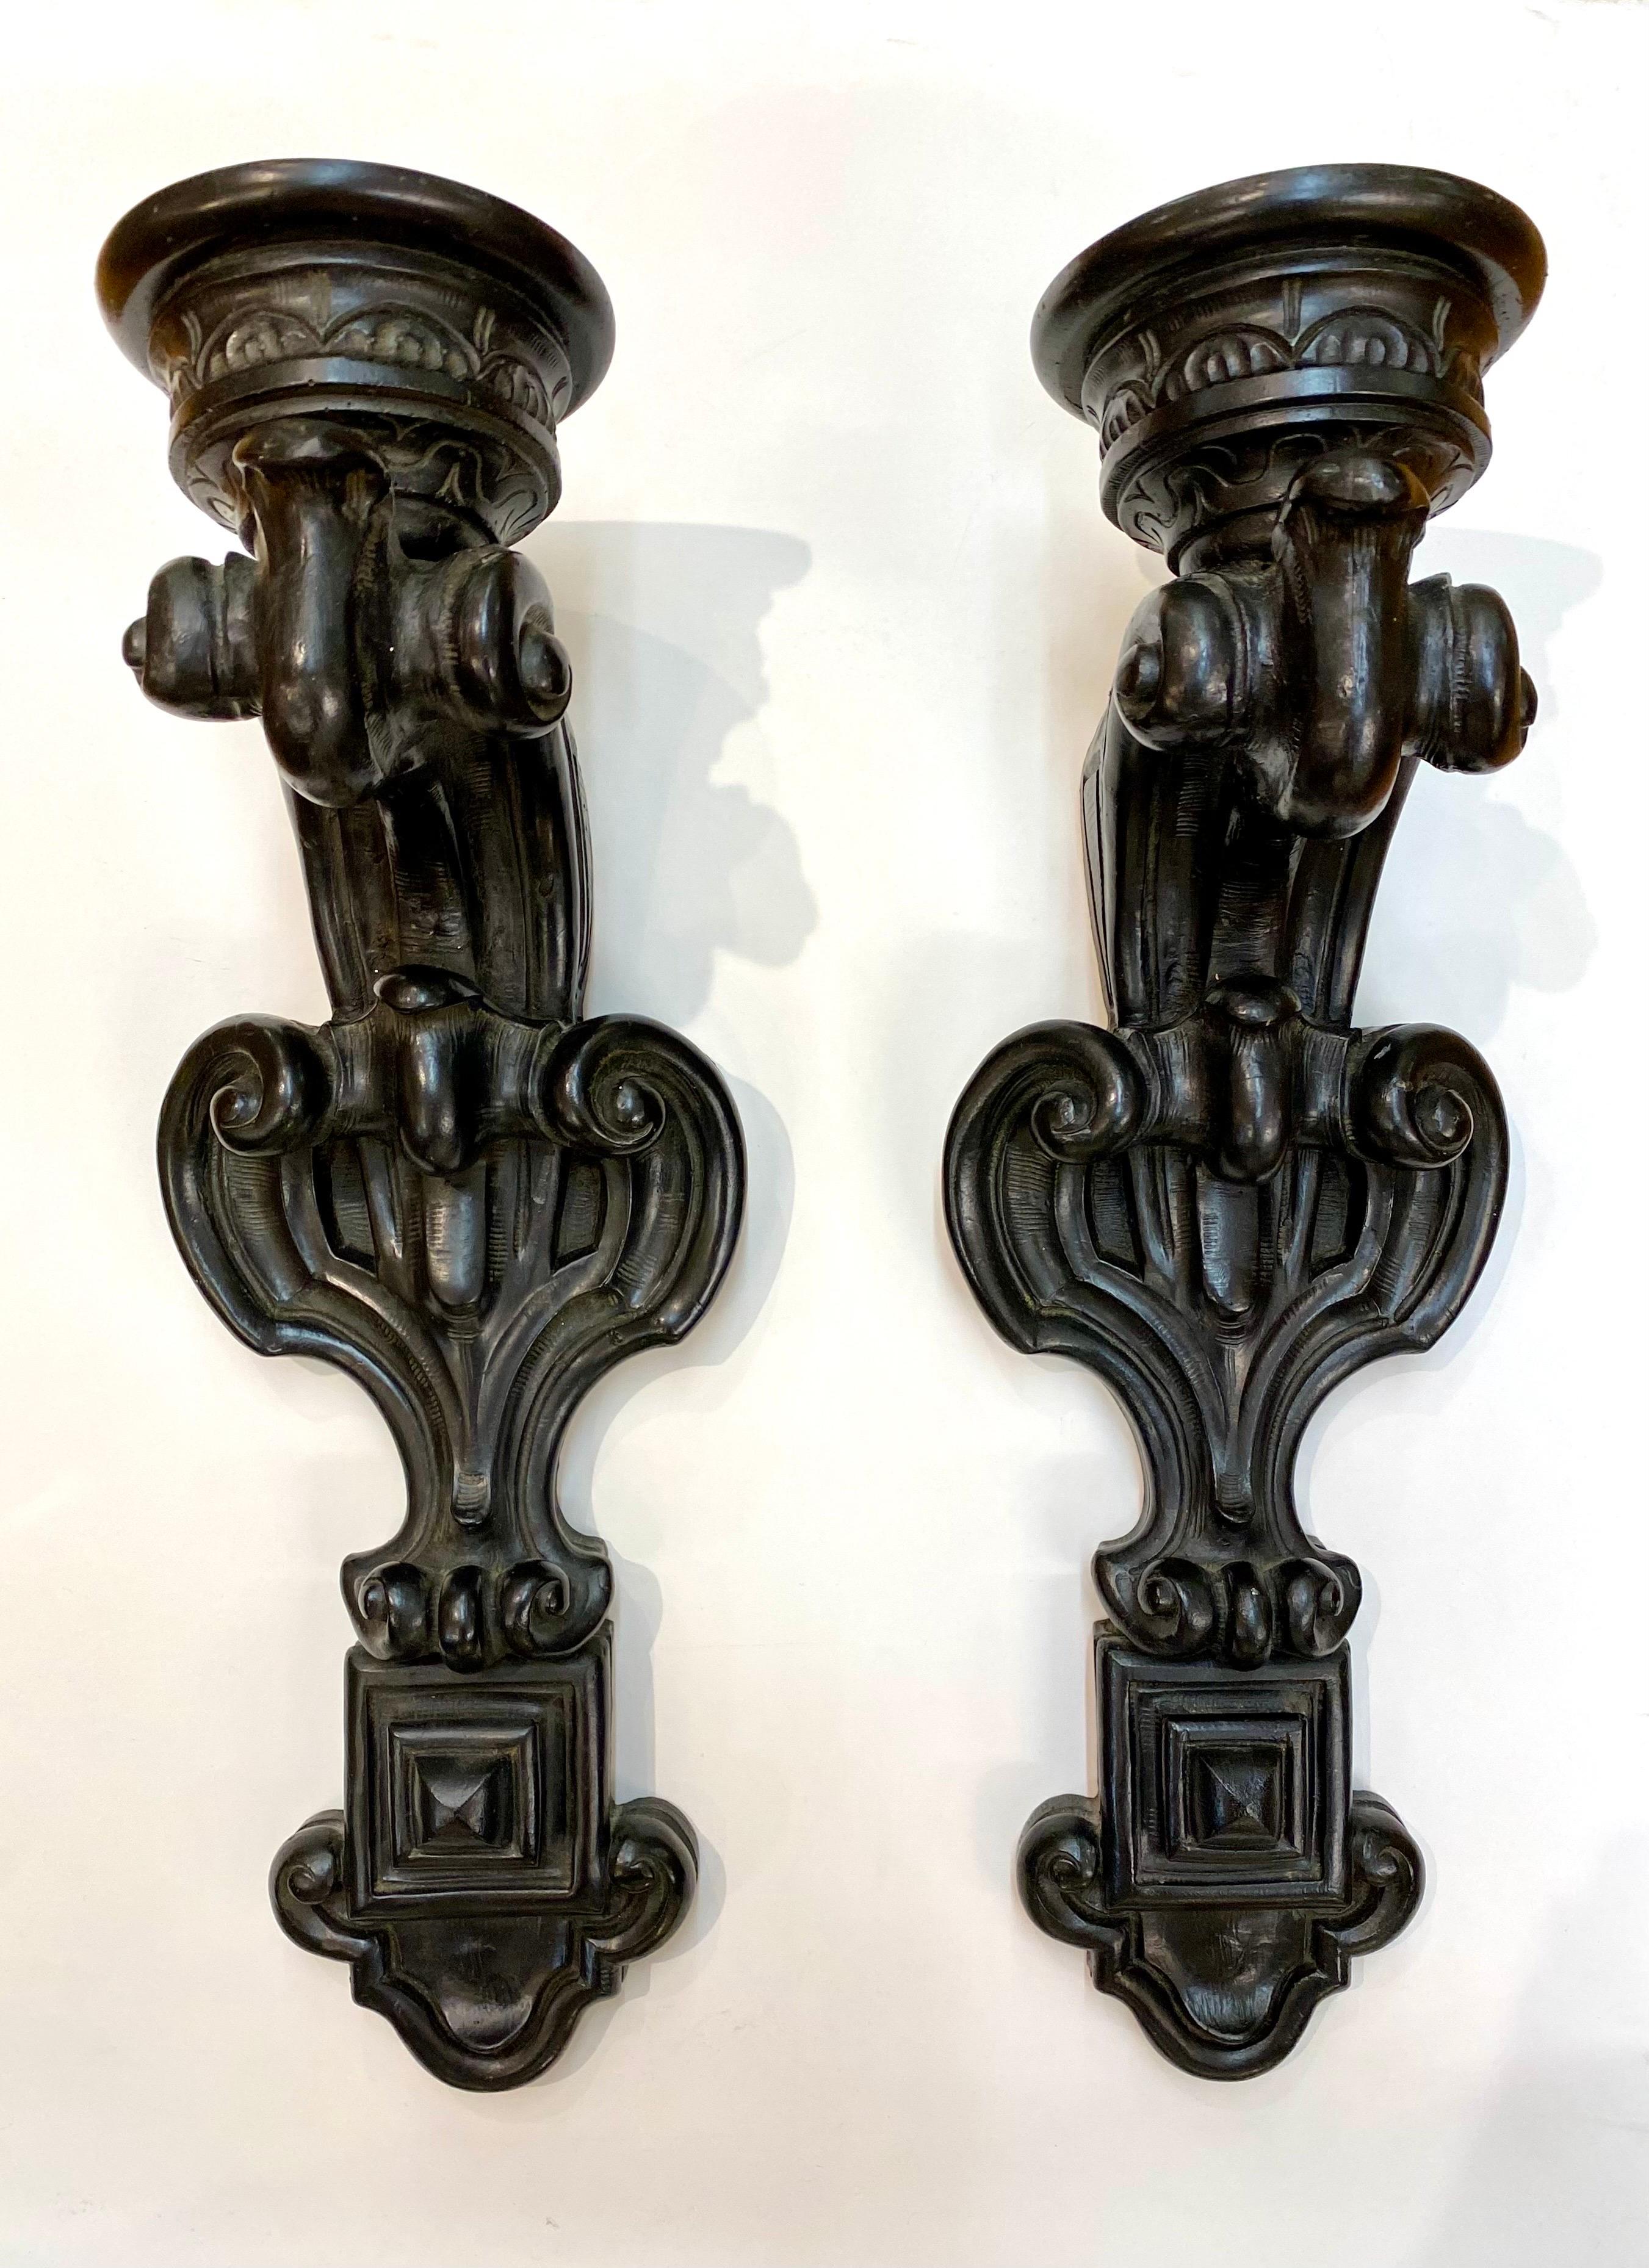 Magnifique et grande paire d'appliques en résine coulée avec finition noire antique dans le style baroque. Chacune d'entre elles possède un trou de 1